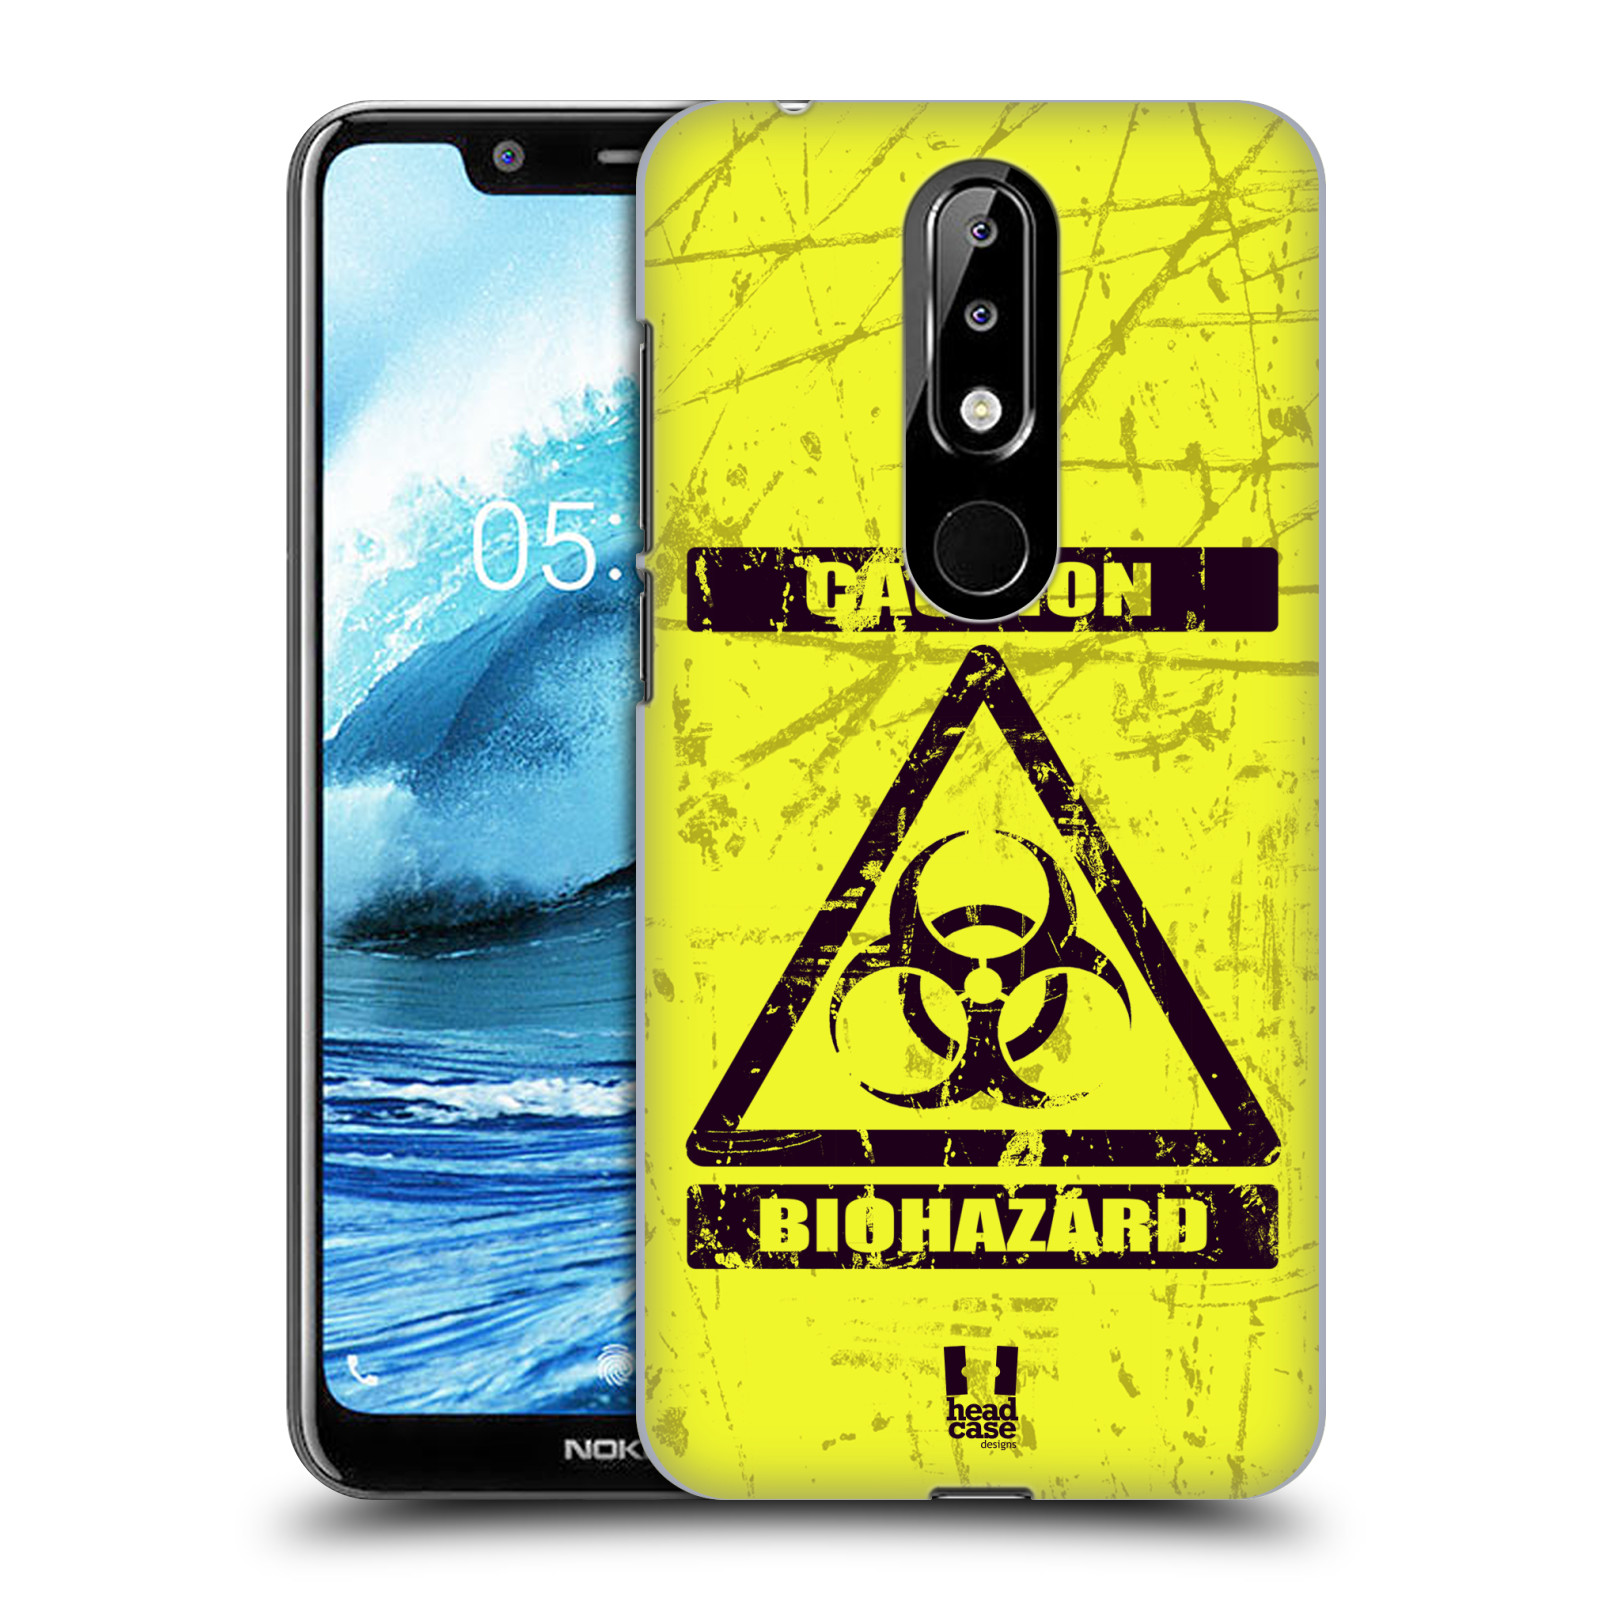 Pouzdro na mobil Nokia 5.1 PLUS - HEAD CASE - Biohazard